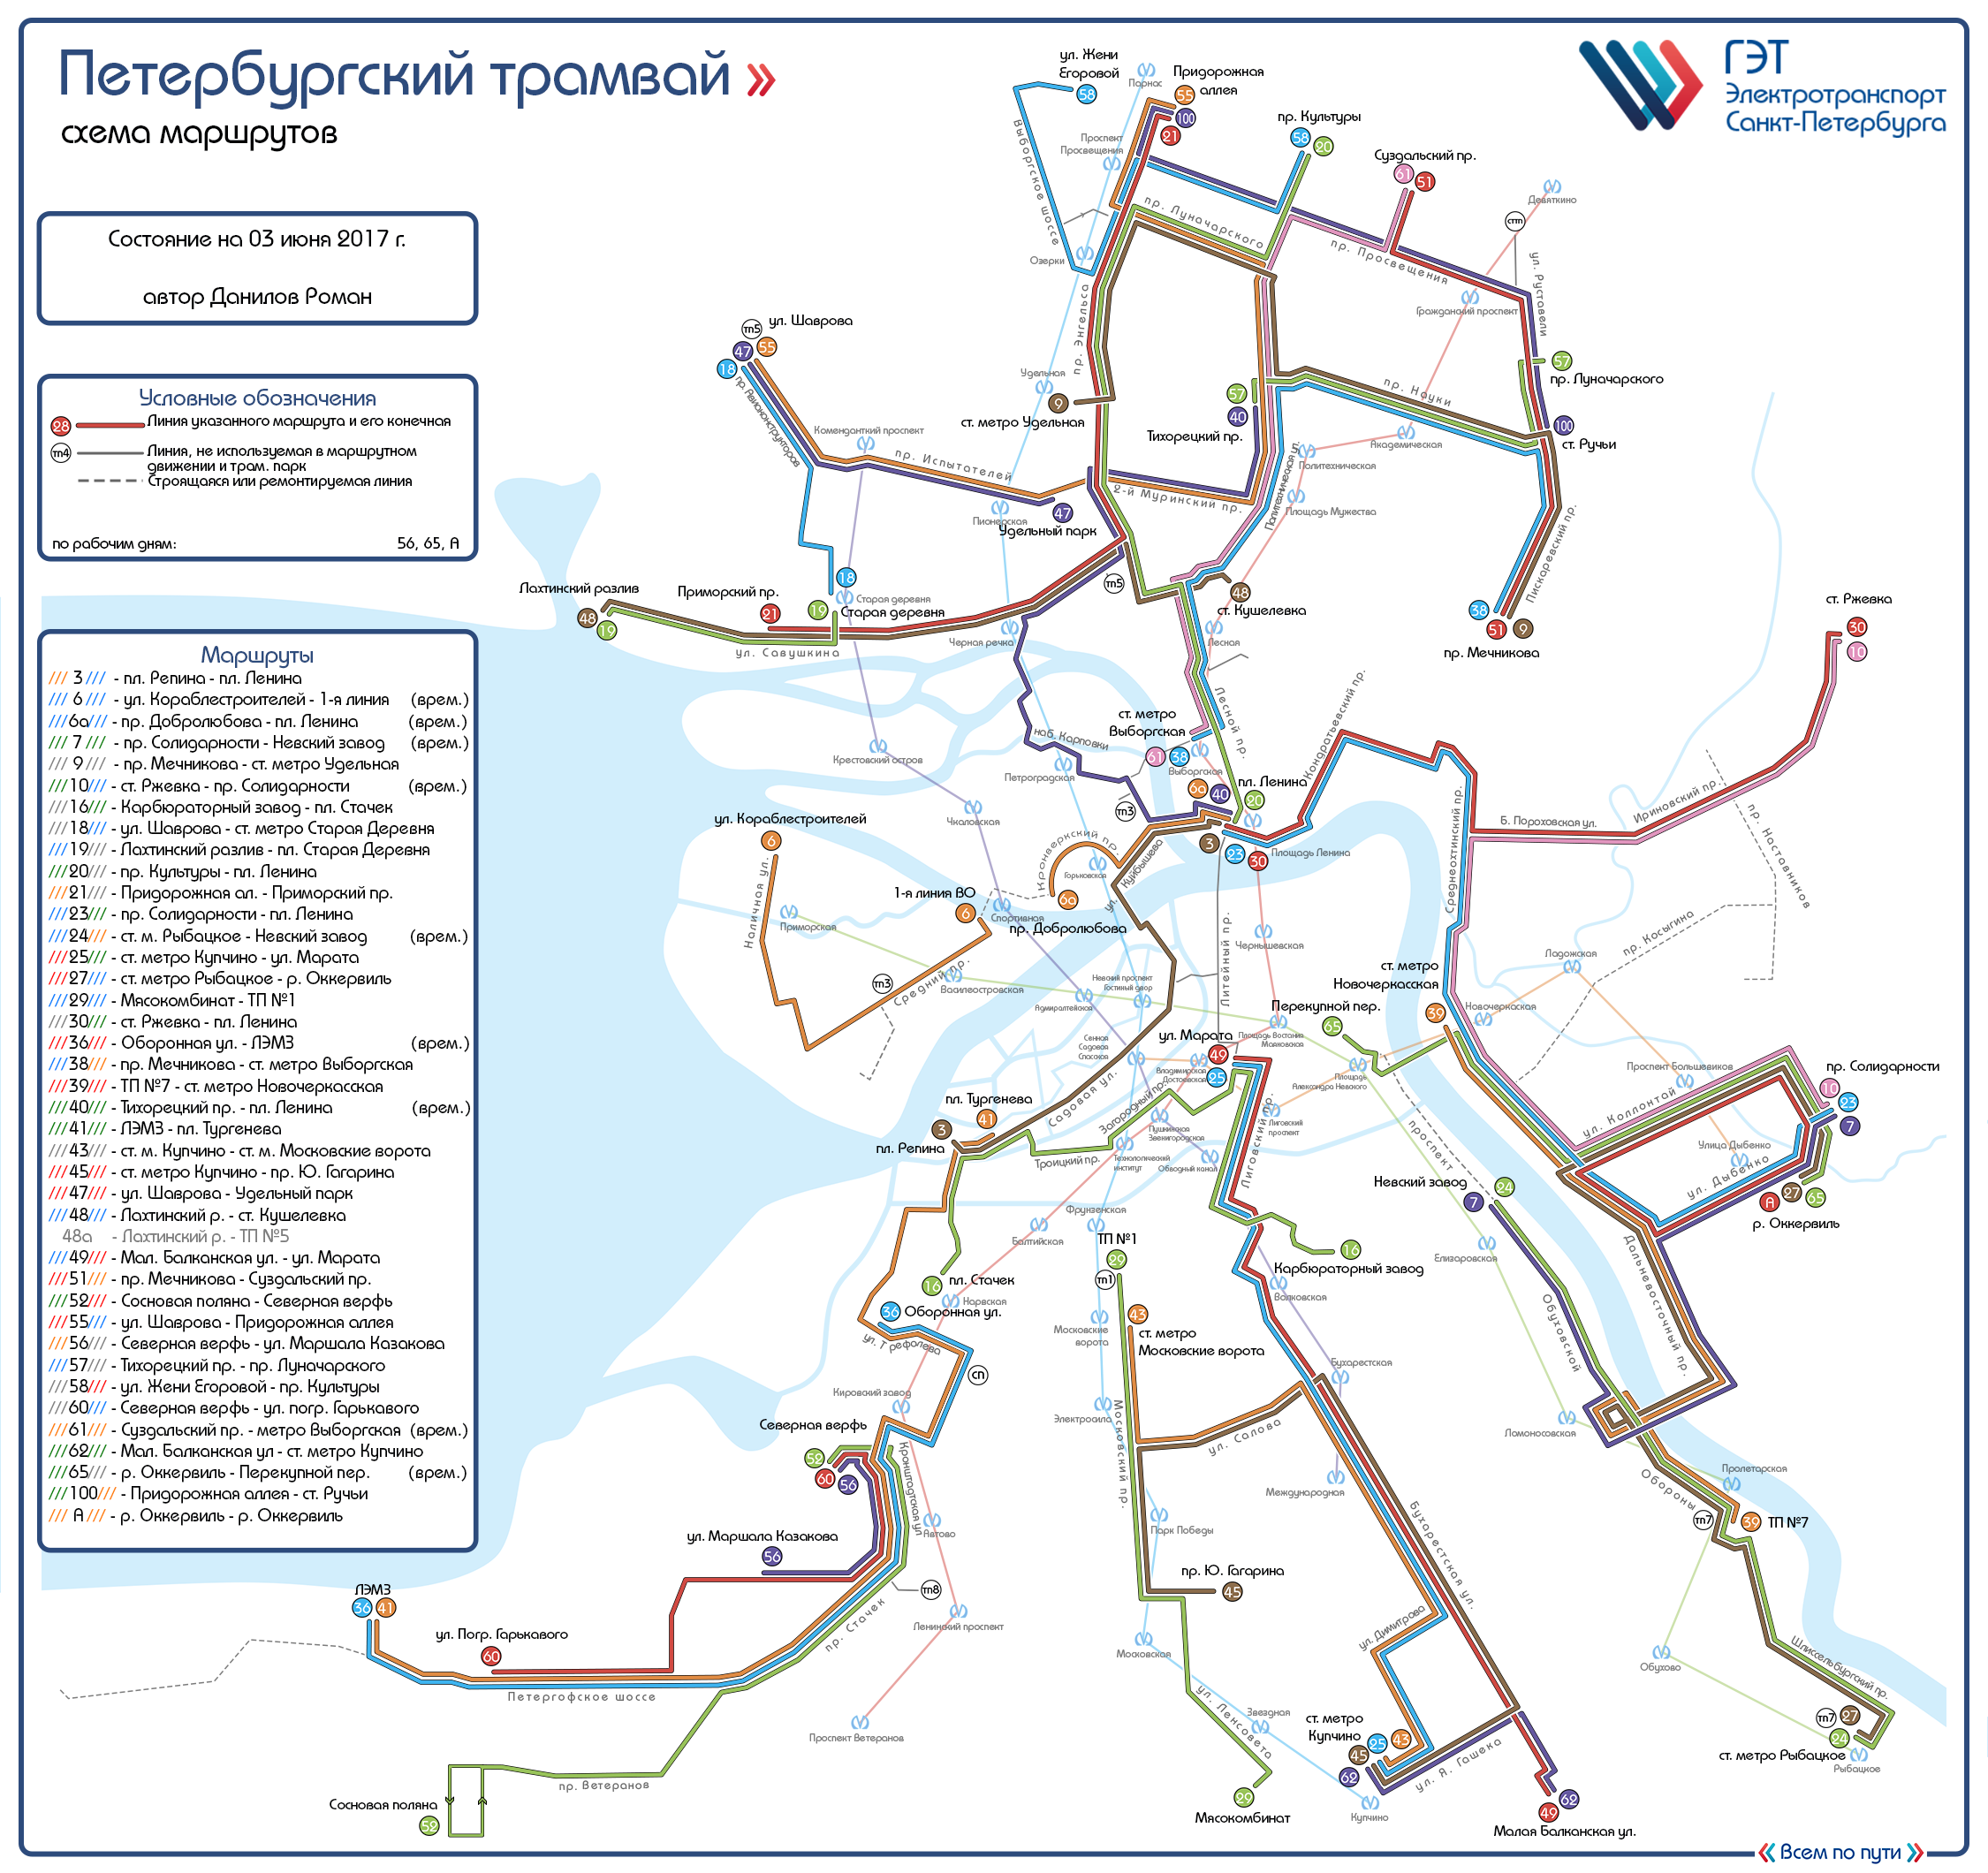 Санкт-Петербург — Общегородские схемы